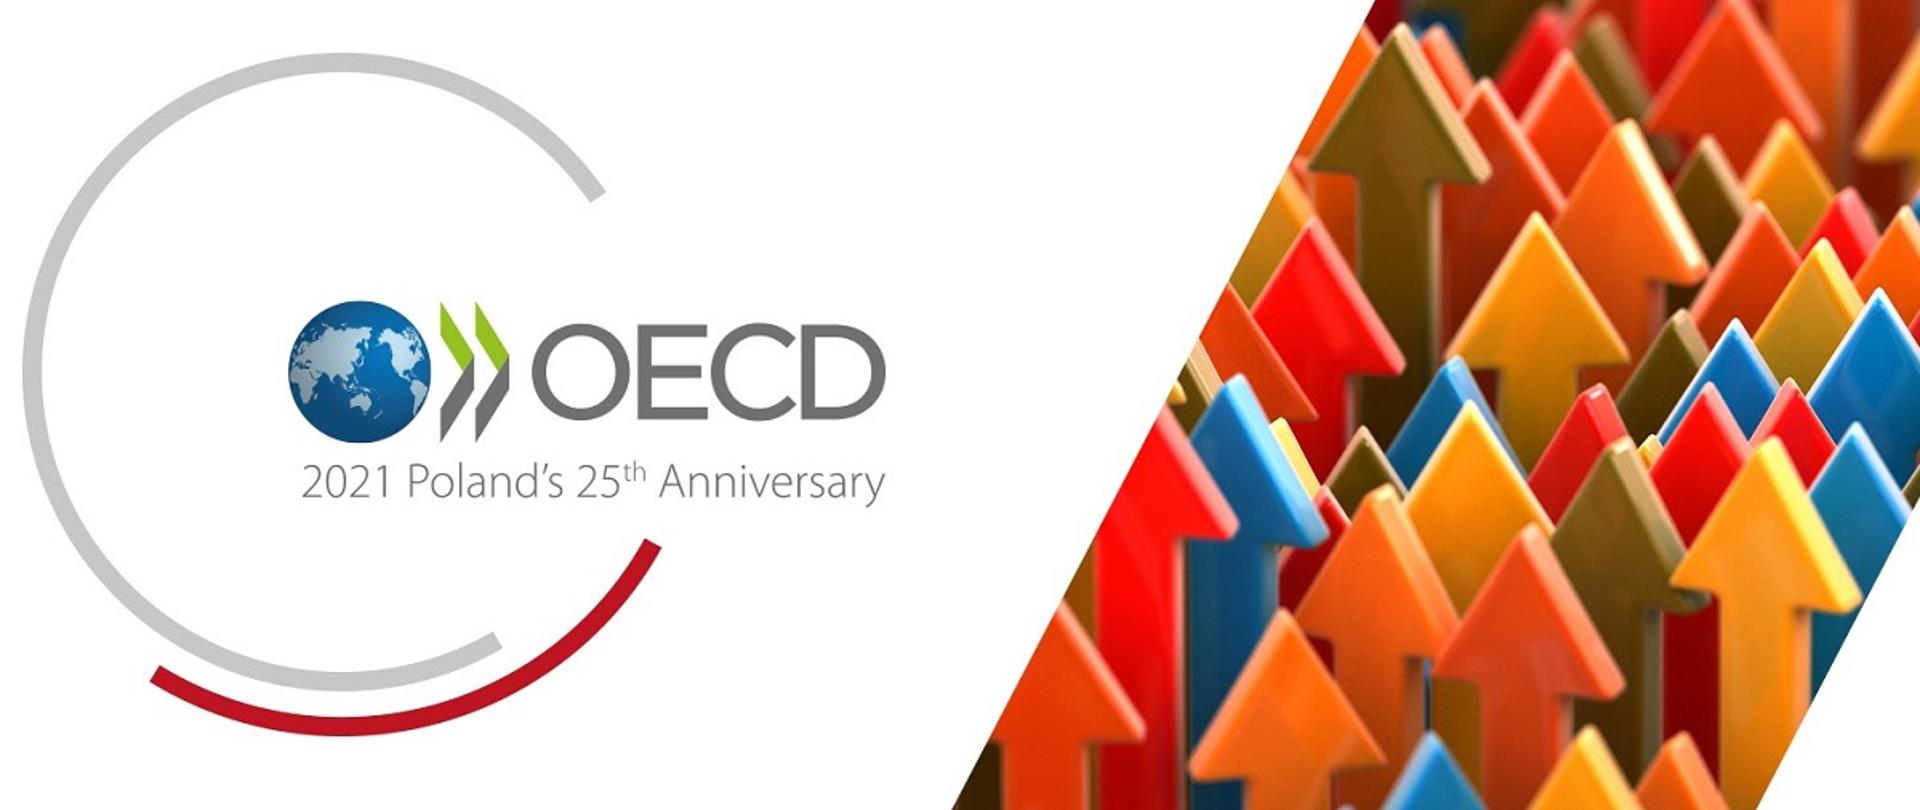 Grafika nt. 25-lecia członkostwa Polski w OECD, po prawej stronie kolorowe strzałki skierowane w górę, po lewej stronie logo OECD z napisem w języku angielskim "2021 Poland's 25 th Anniversary" 